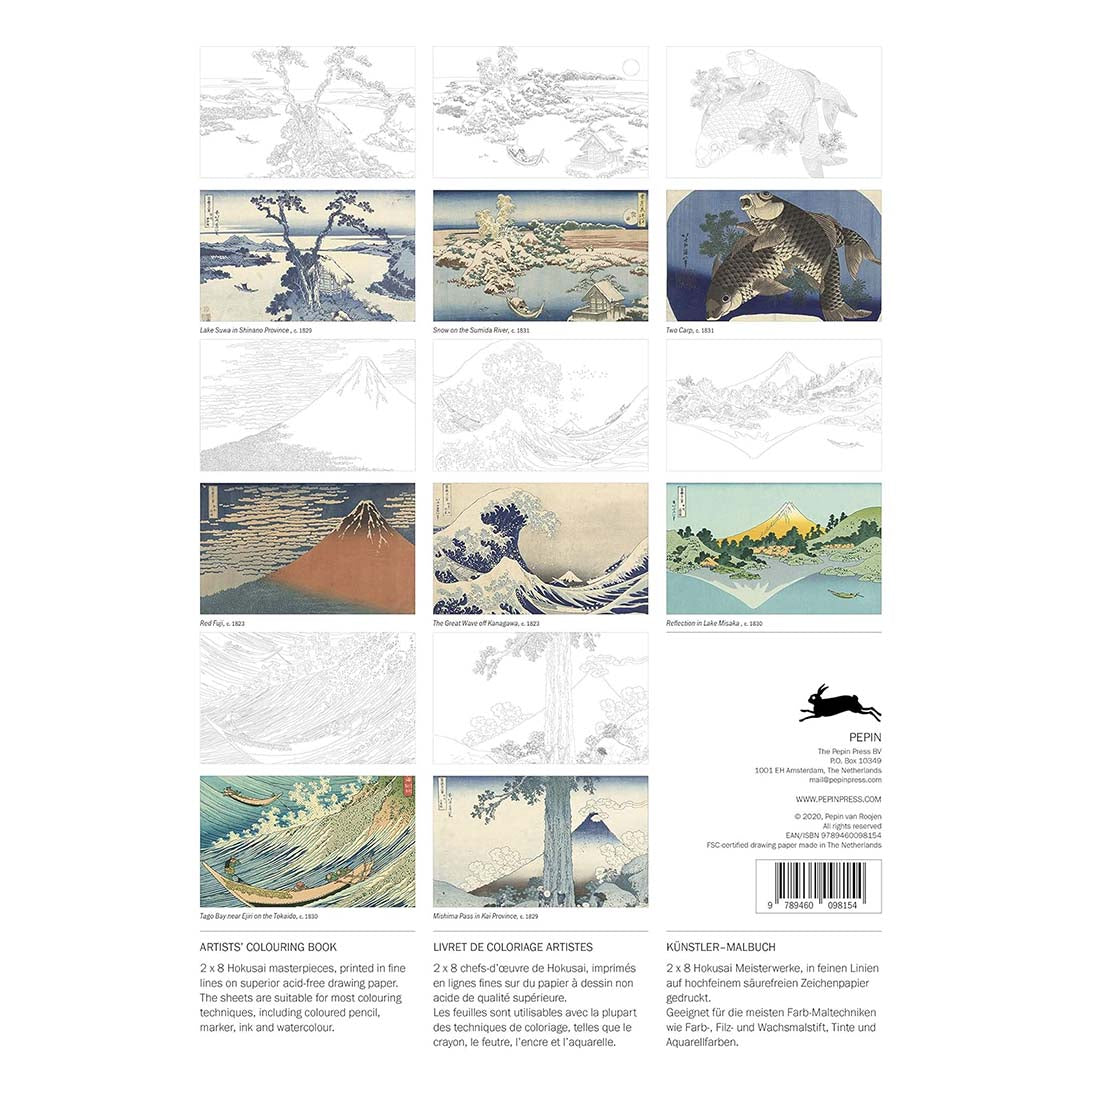 Hokusai: Artists&#39; Coloring Book